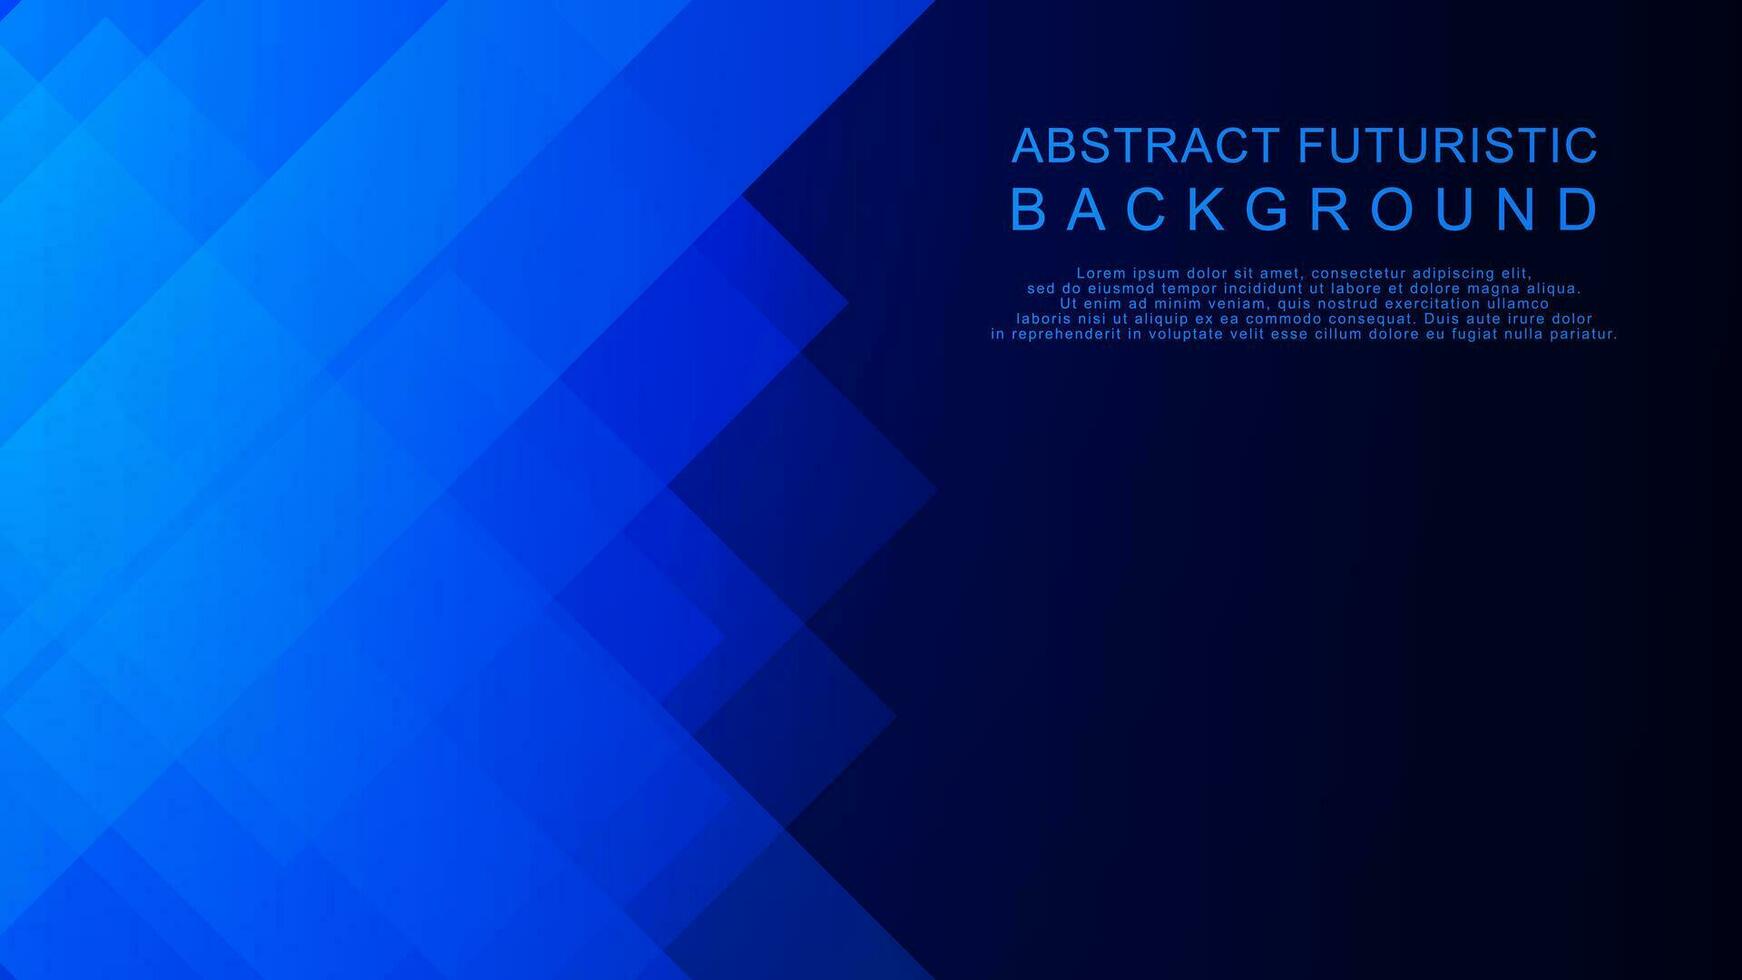 abstrakt futuristisch mit einfach gestalten auf dunkel Blau Technologie Hintergrund Design. Vektor Illustration.